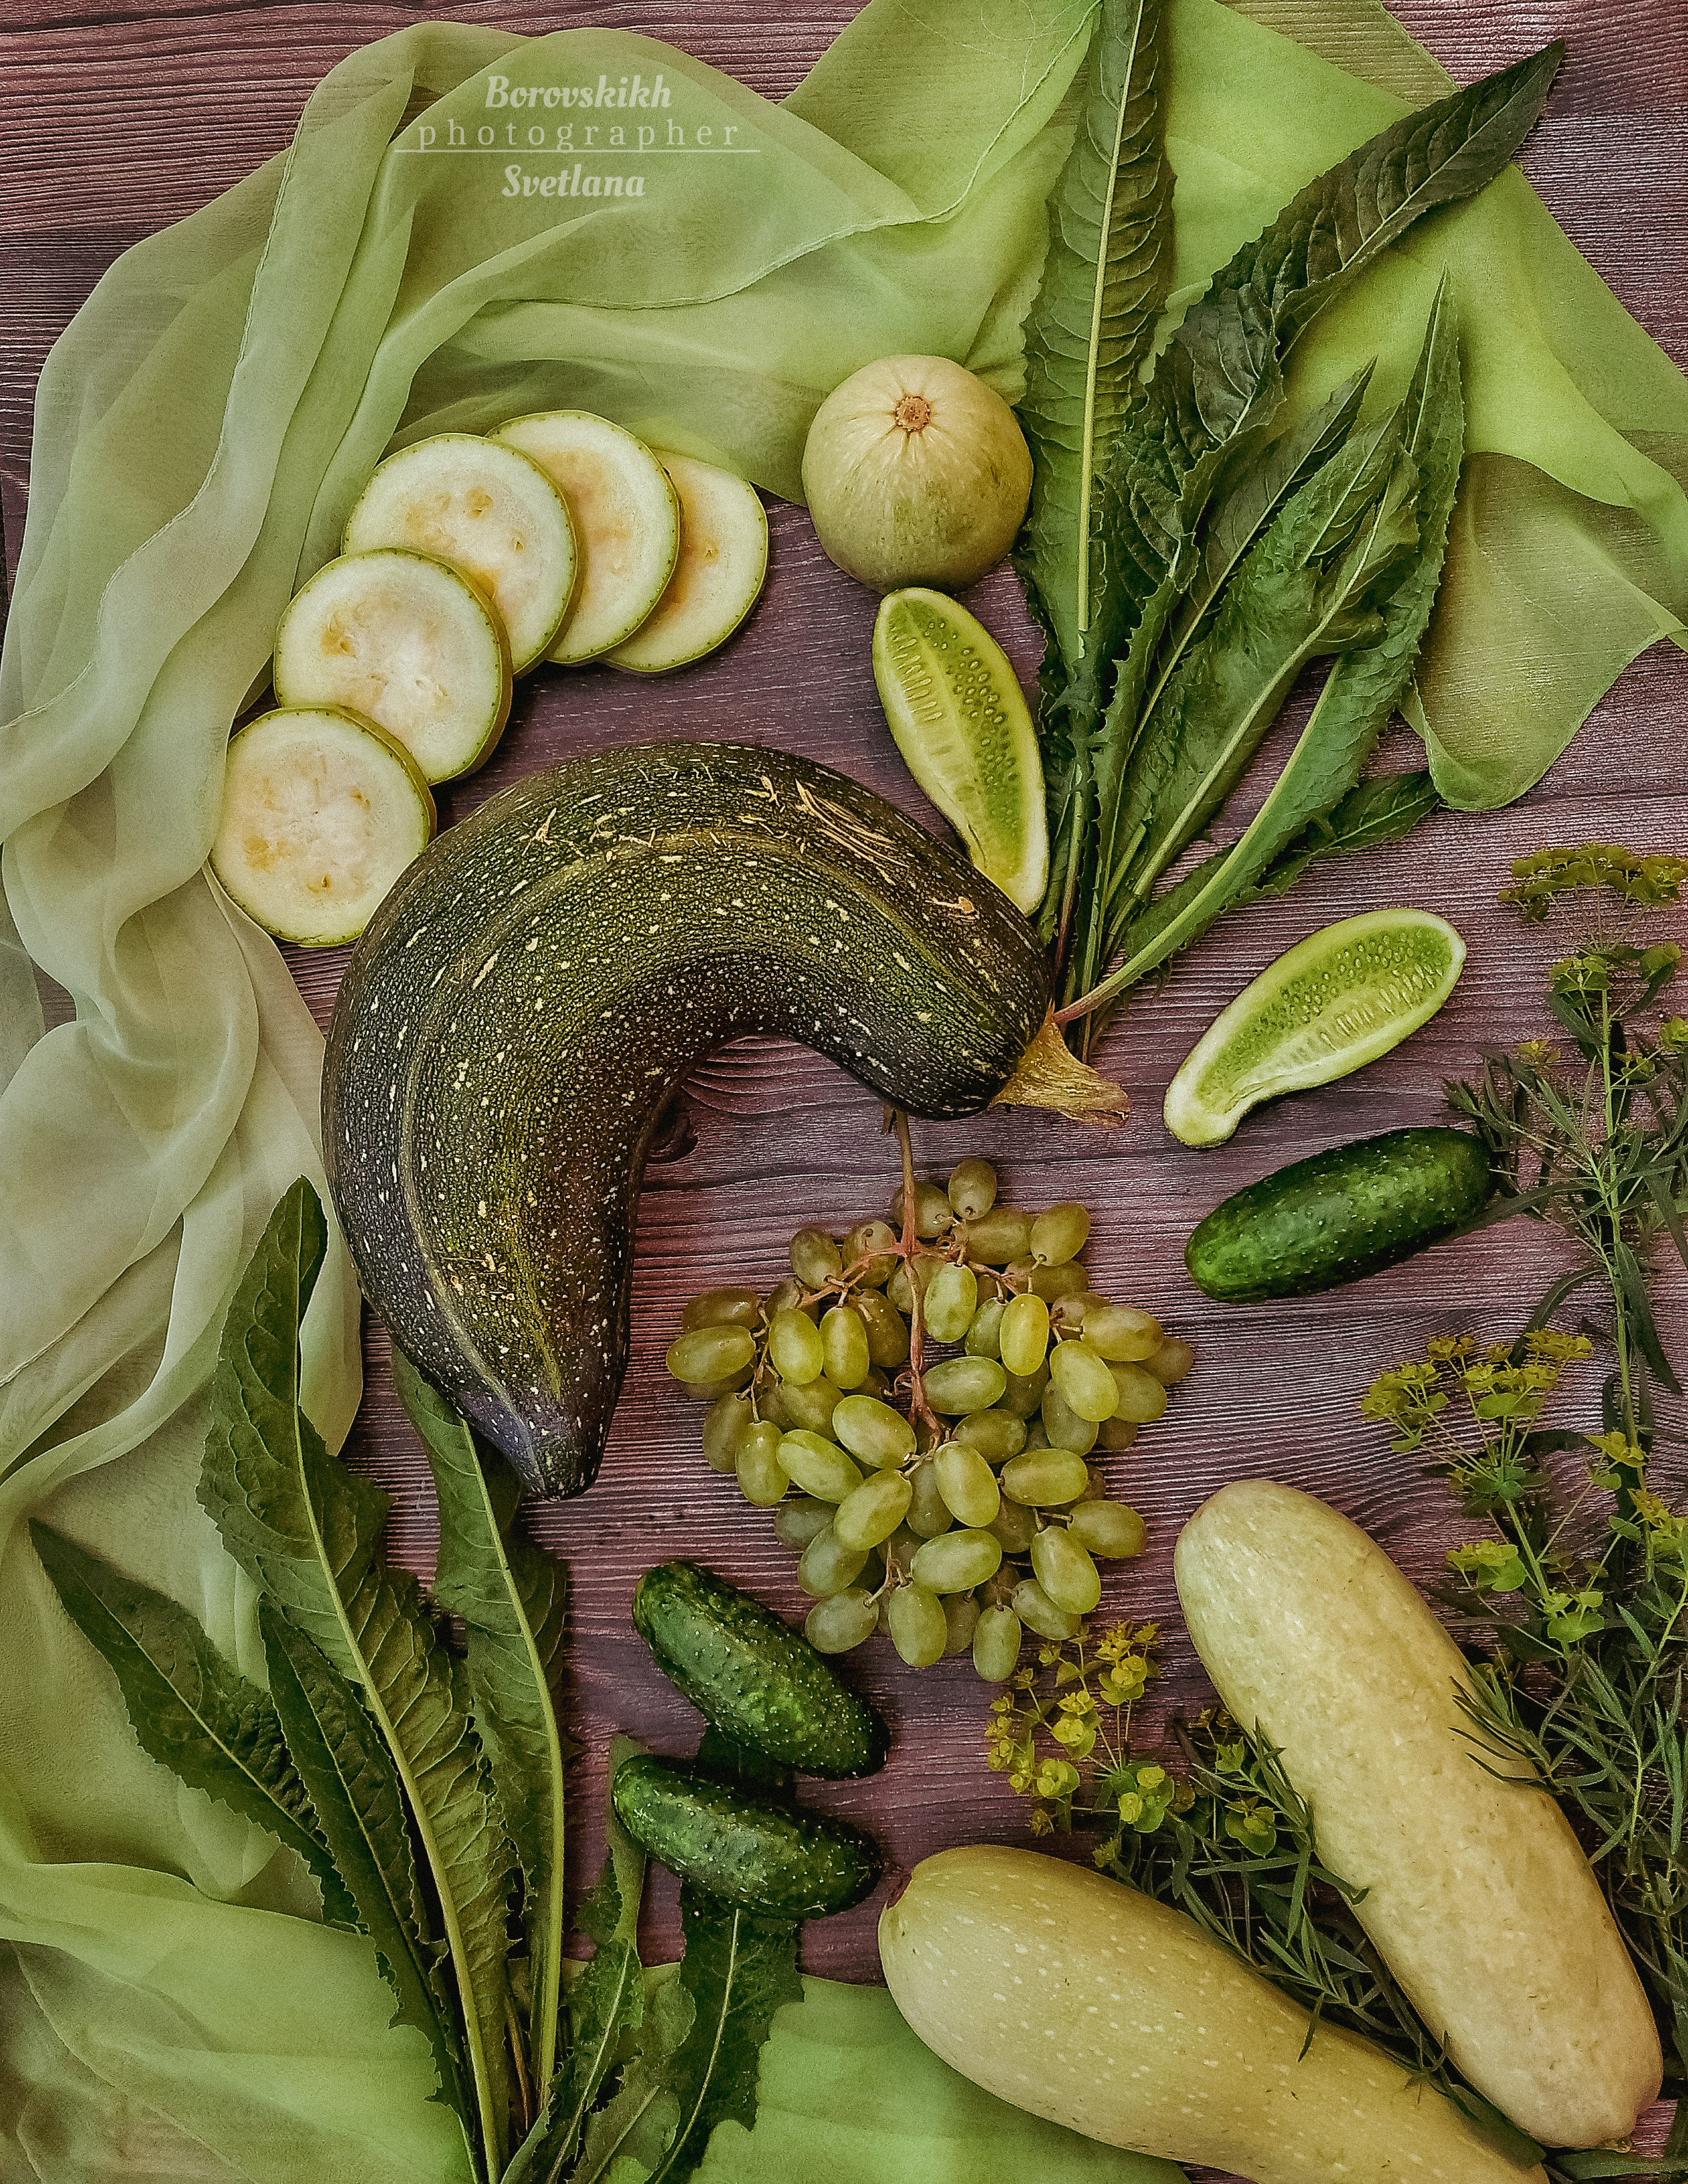 Раскладка, флетлей, Flatley, зелёный, овощи, фрукты, драпировка, Светлана Боровских